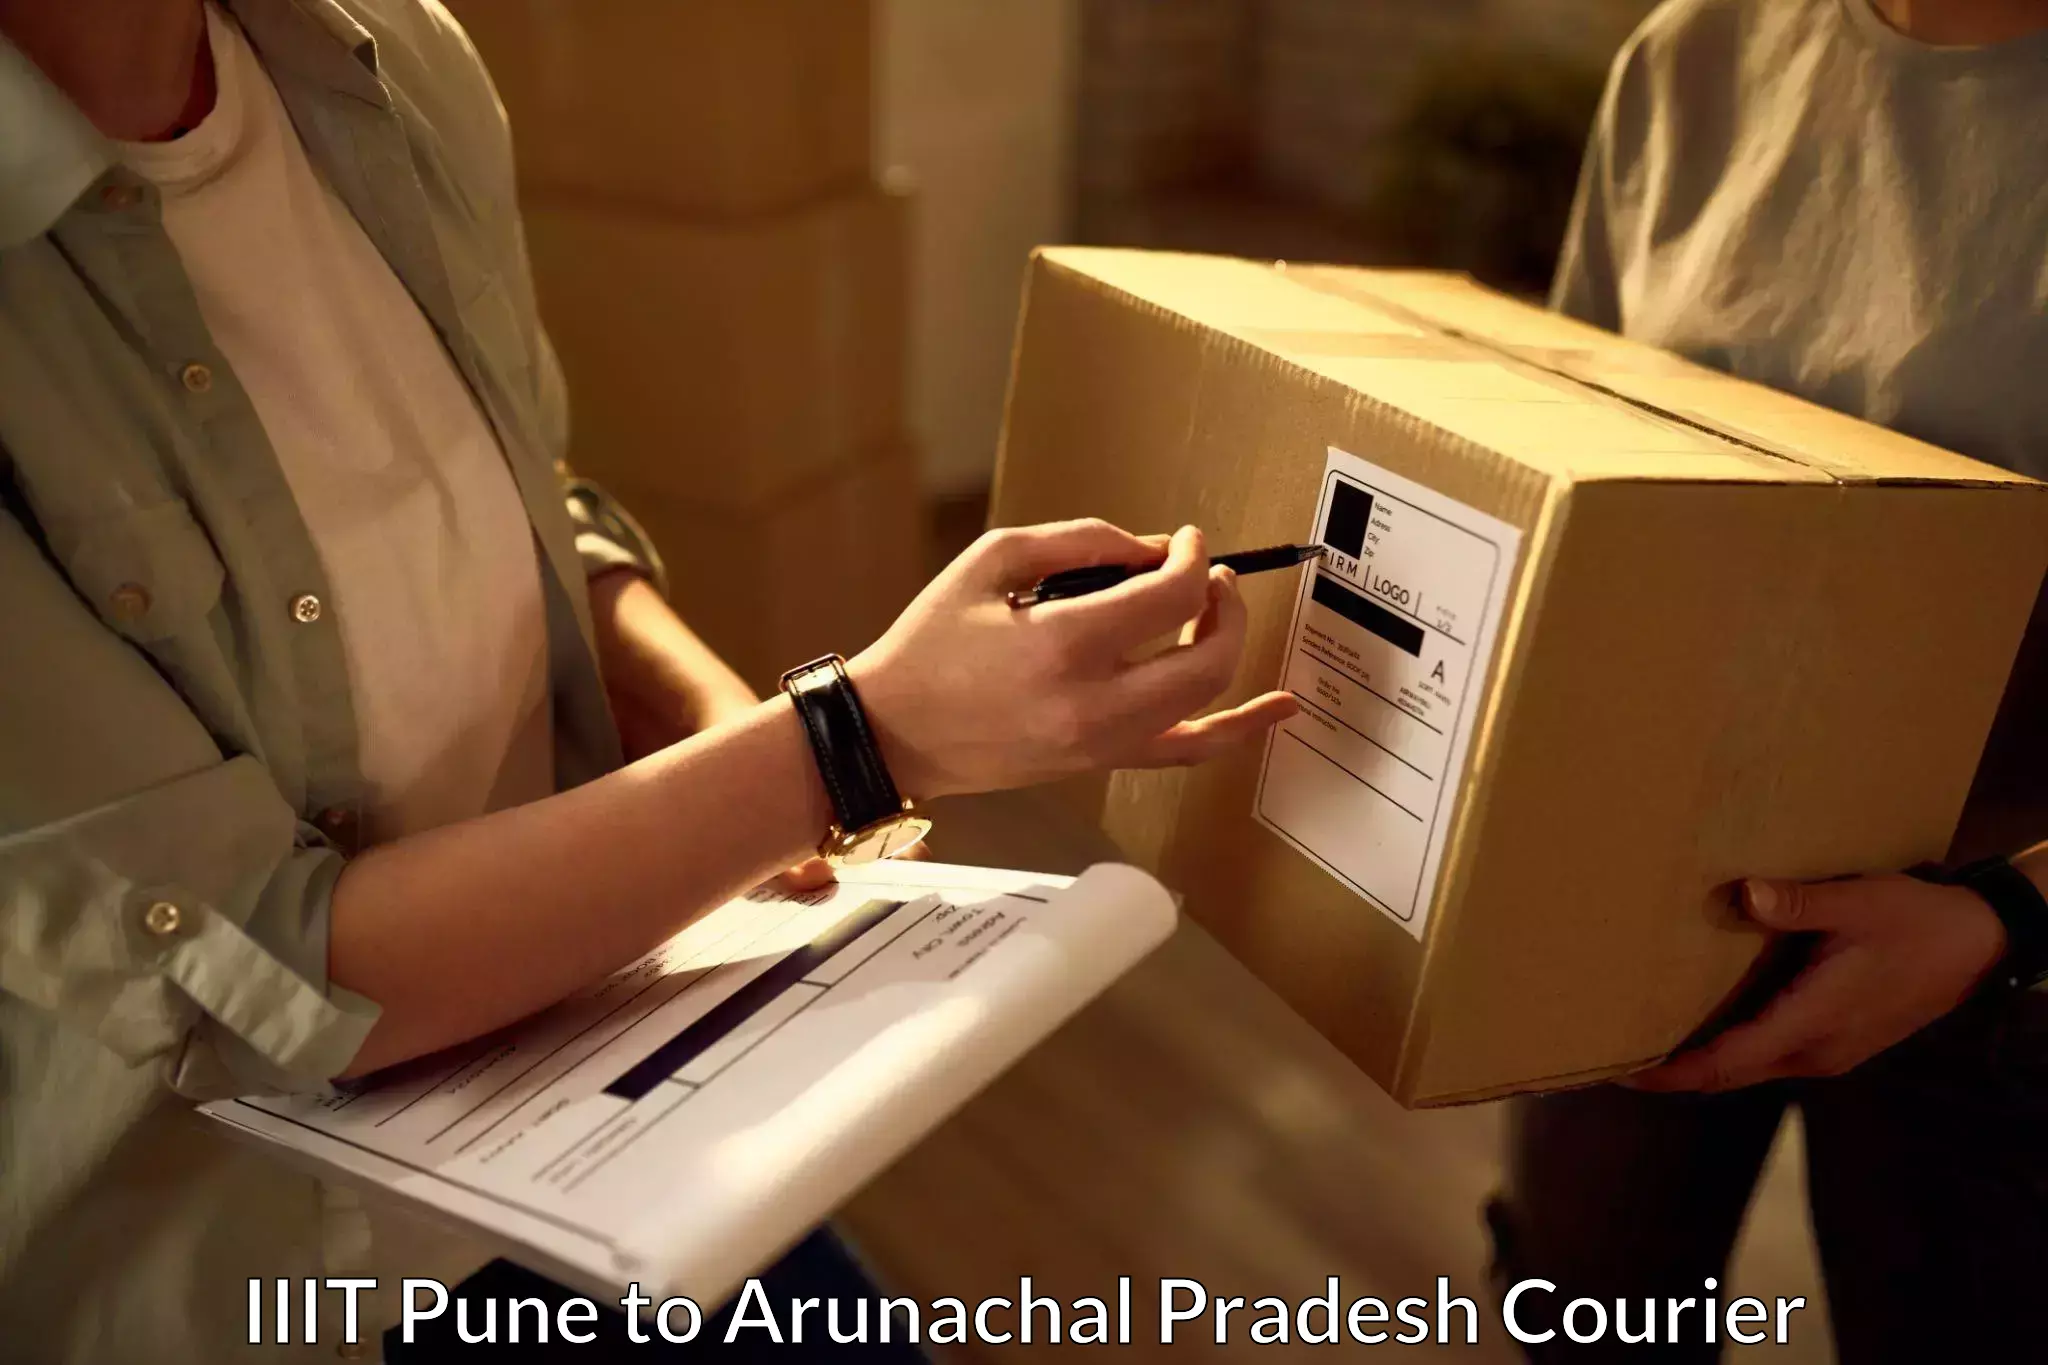 Global logistics network IIIT Pune to Nirjuli